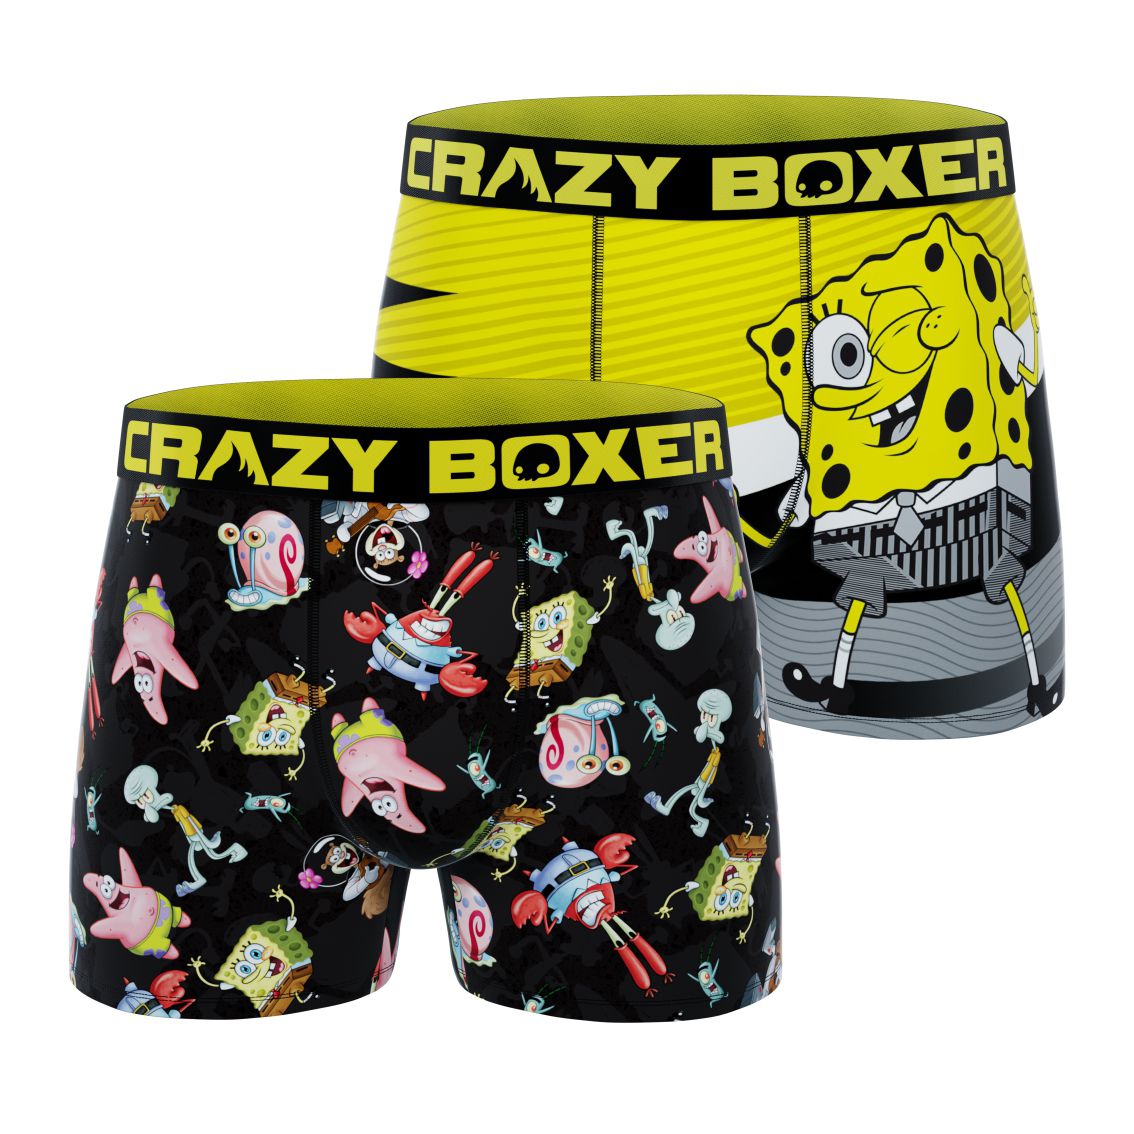 Spongebob Squarepants Boxer Briefs 3-Pack Underwear for Boys Size